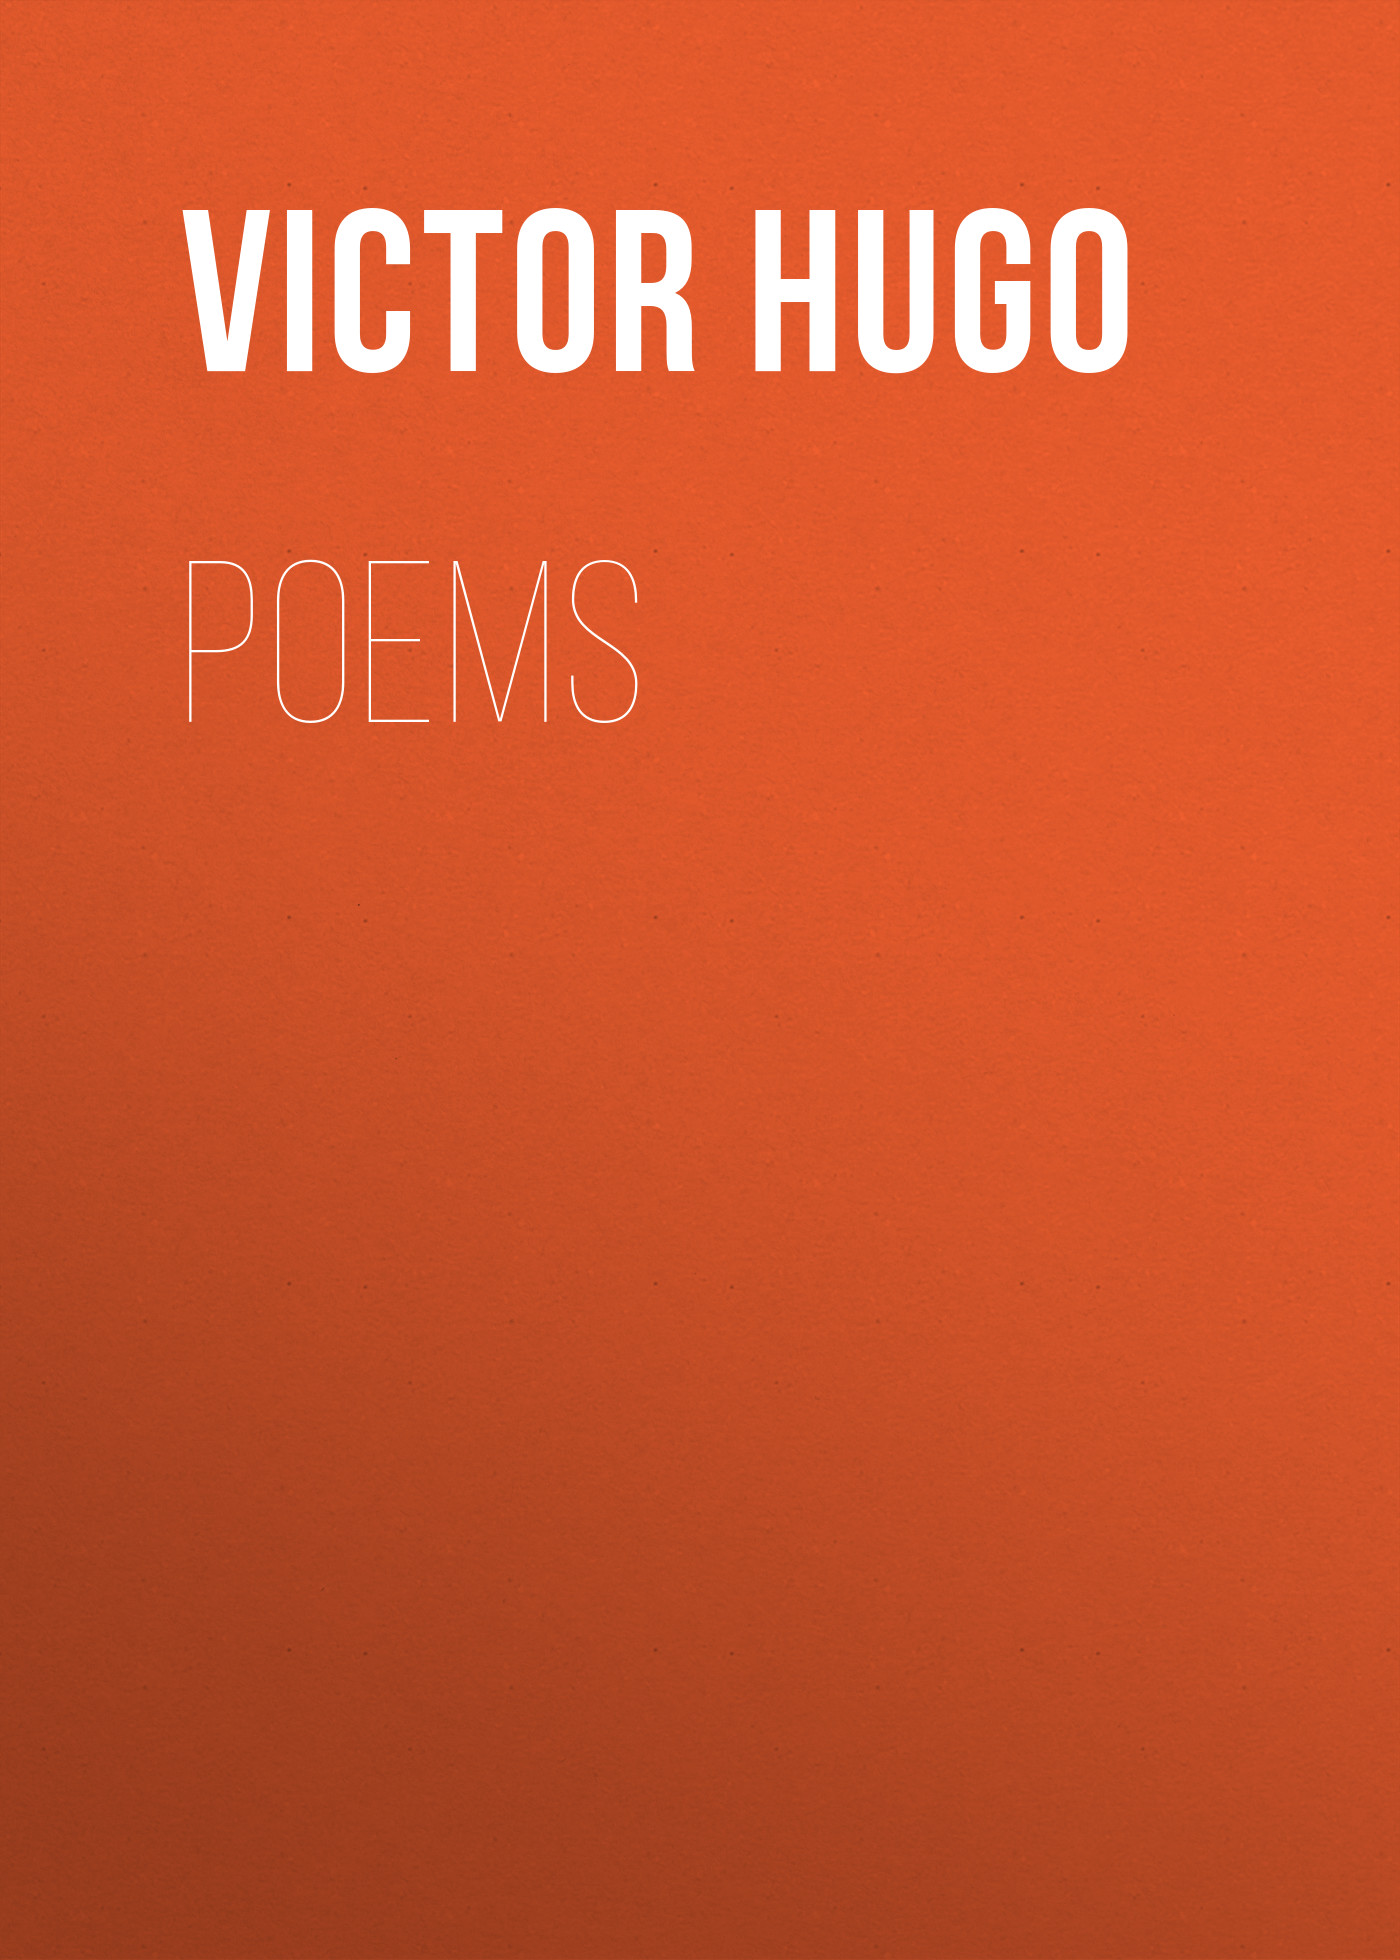 Книга Poems из серии , созданная Victor Hugo, может относится к жанру Литература 19 века, Зарубежная старинная литература, Зарубежная классика. Стоимость электронной книги Poems с идентификатором 25230012 составляет 0 руб.